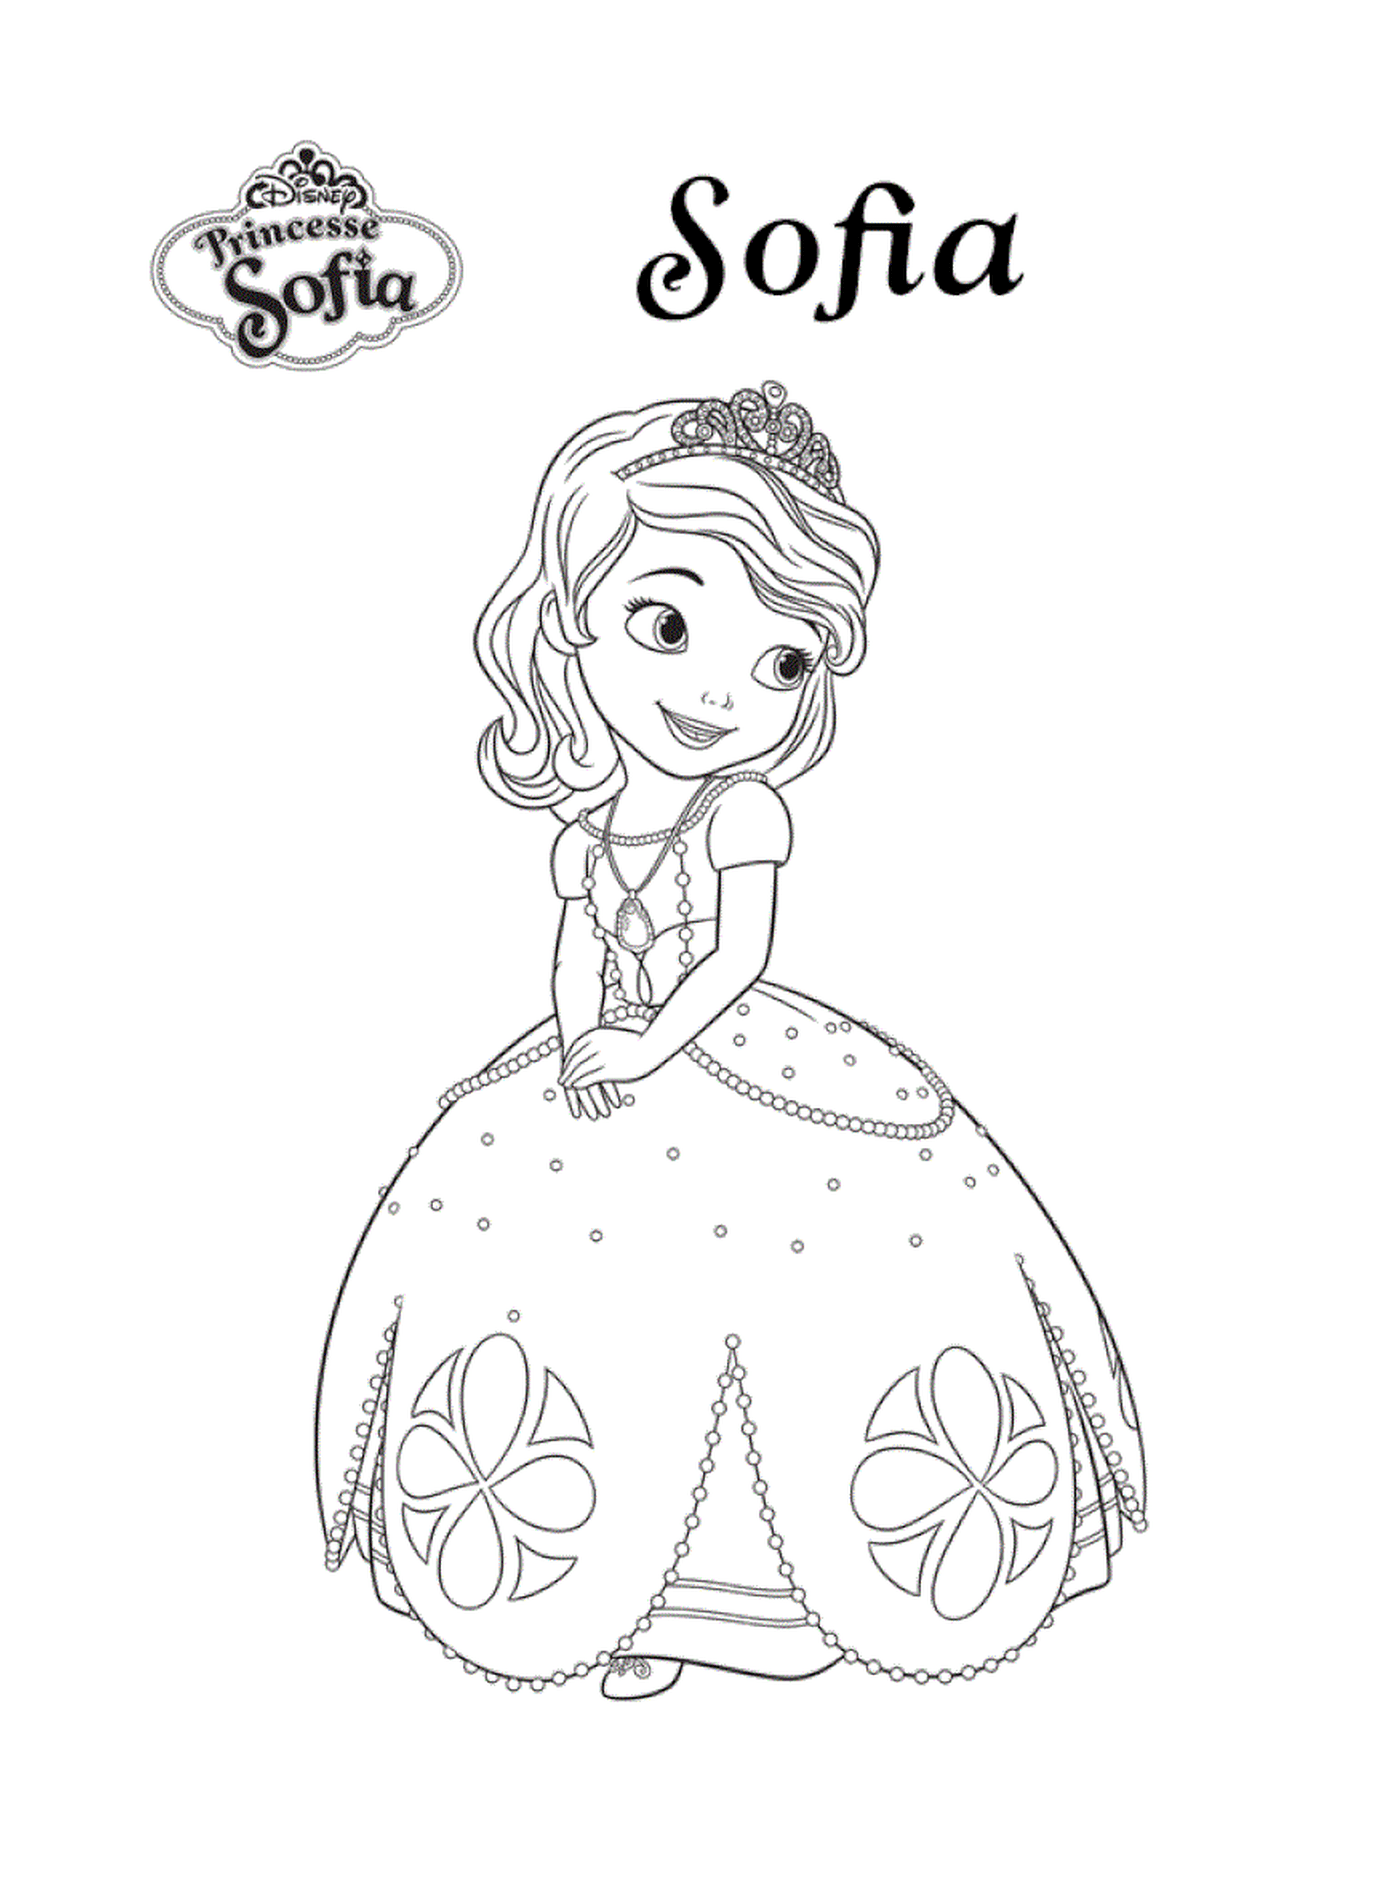  Sofia, a Disney princess 